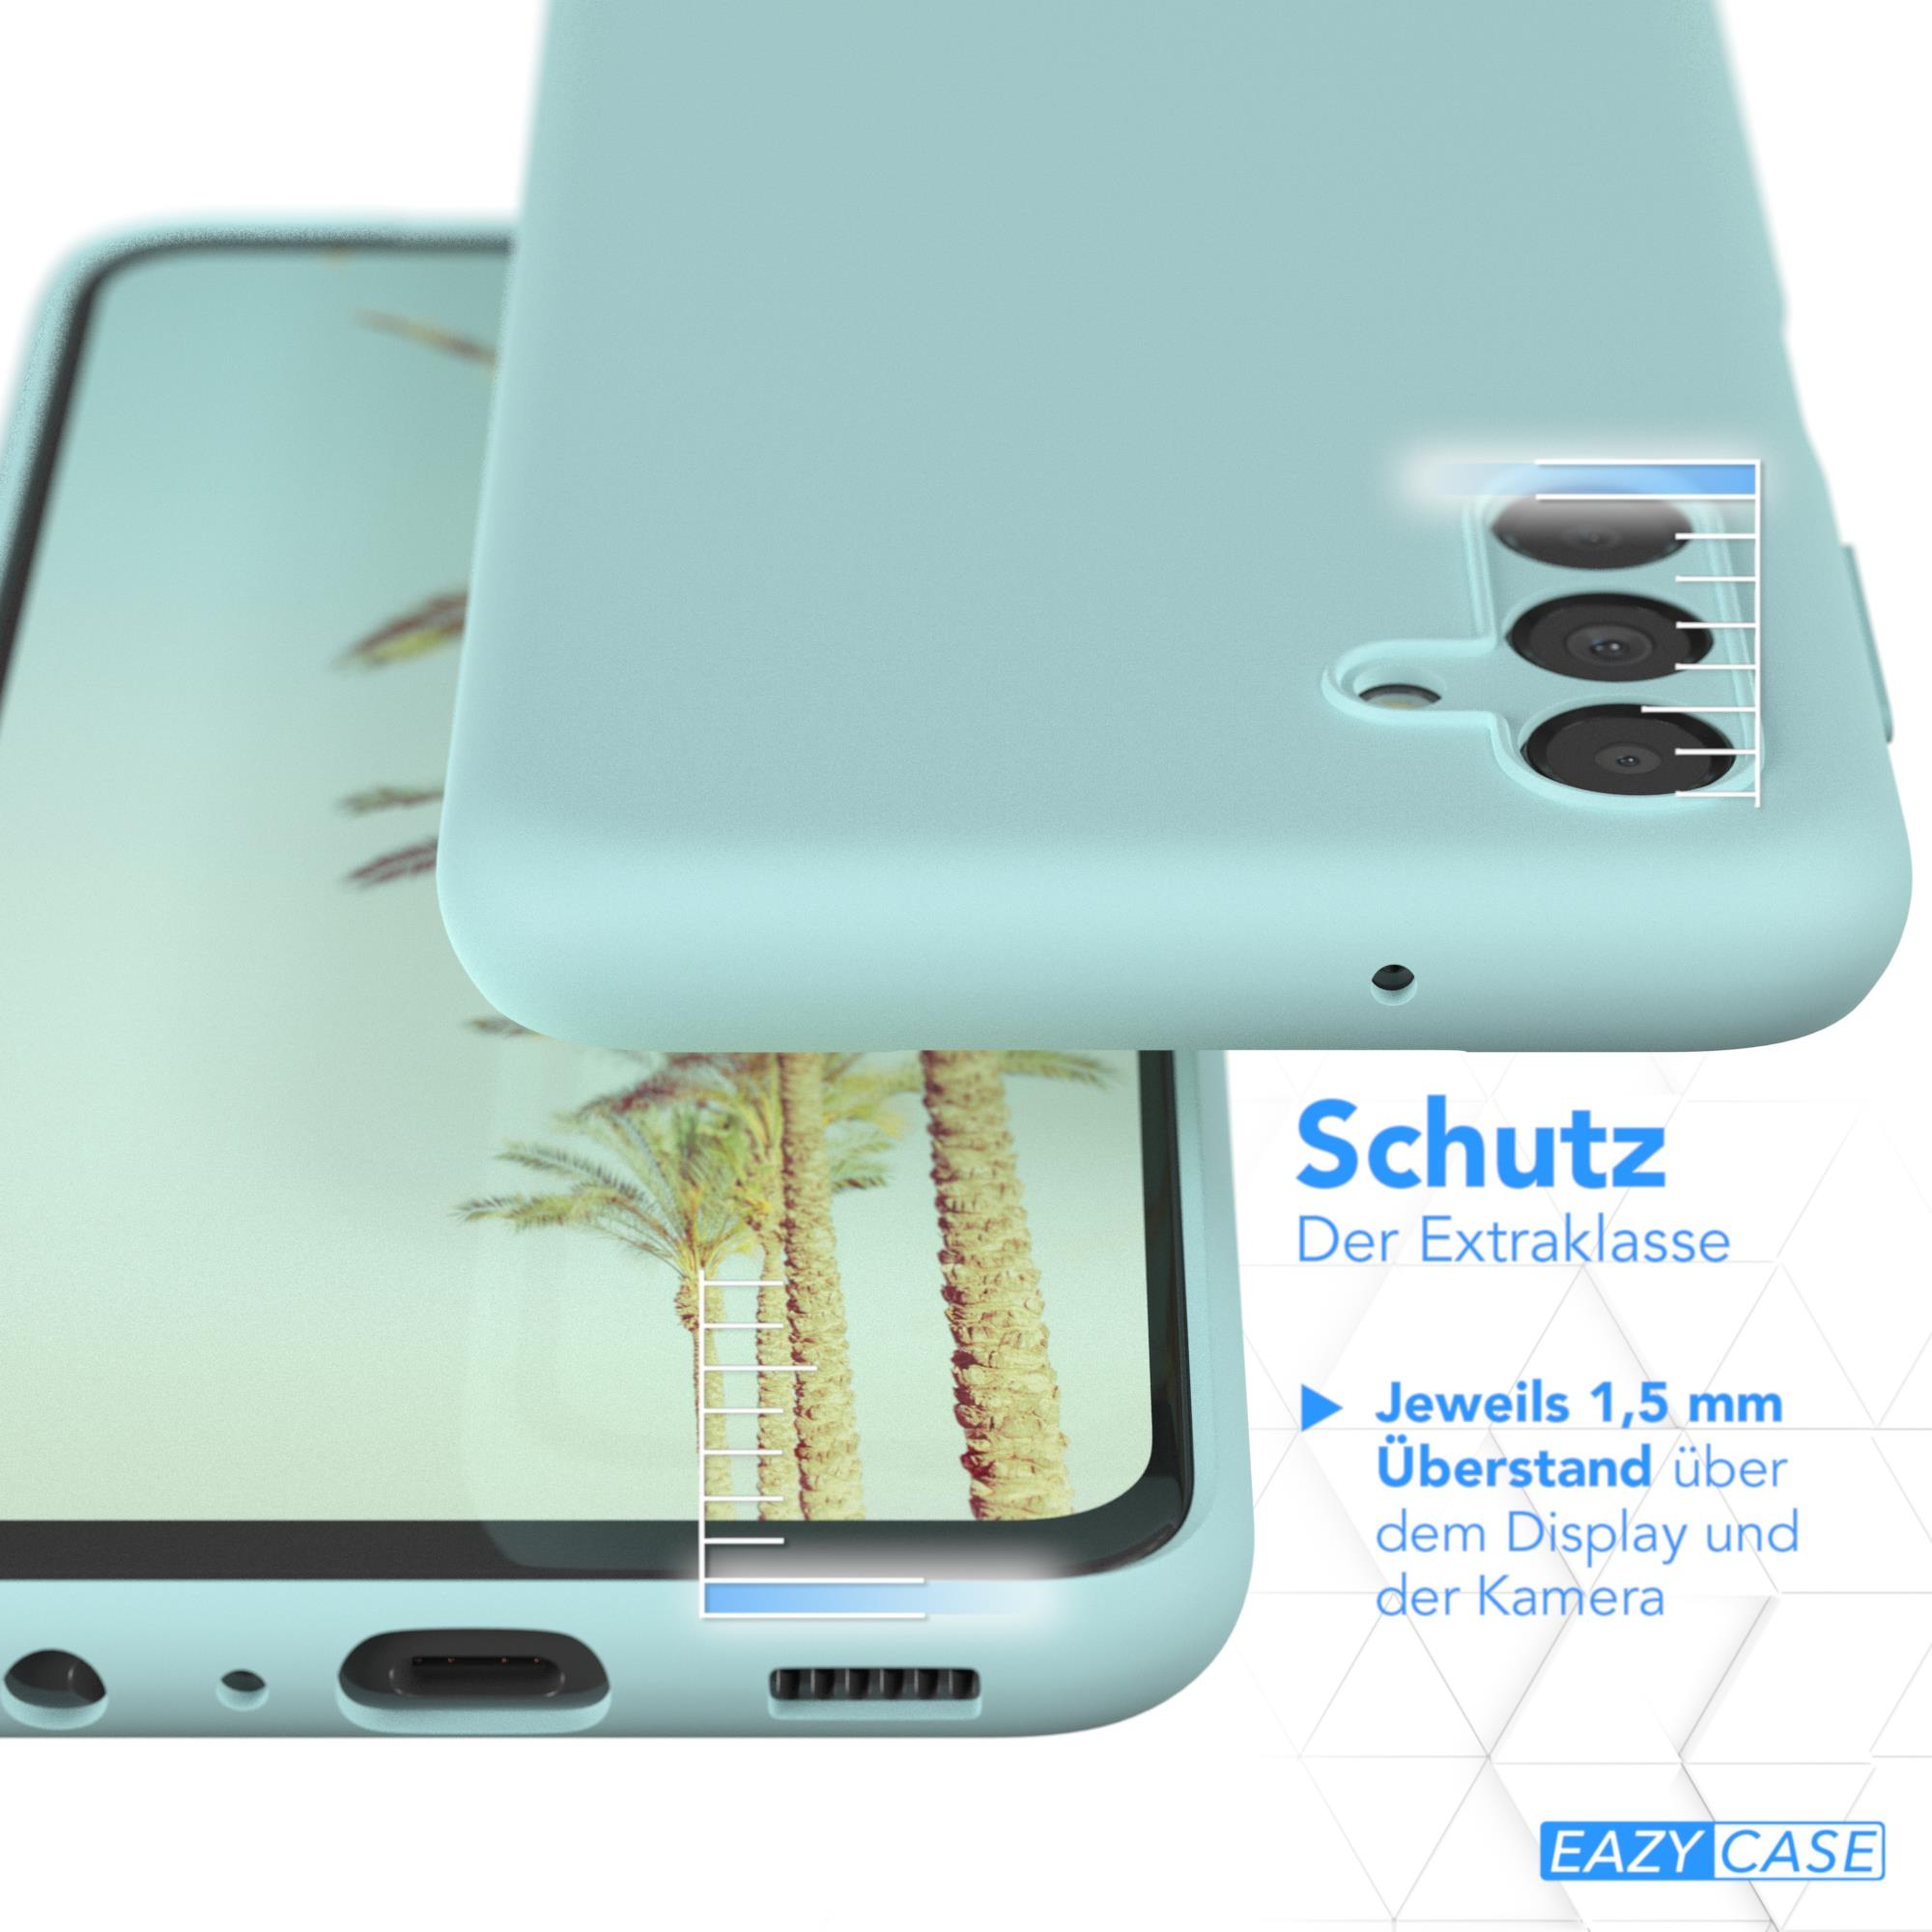 EAZY CASE Premium Silikon Handycase, A13, Grün Mint Galaxy Backcover, Samsung